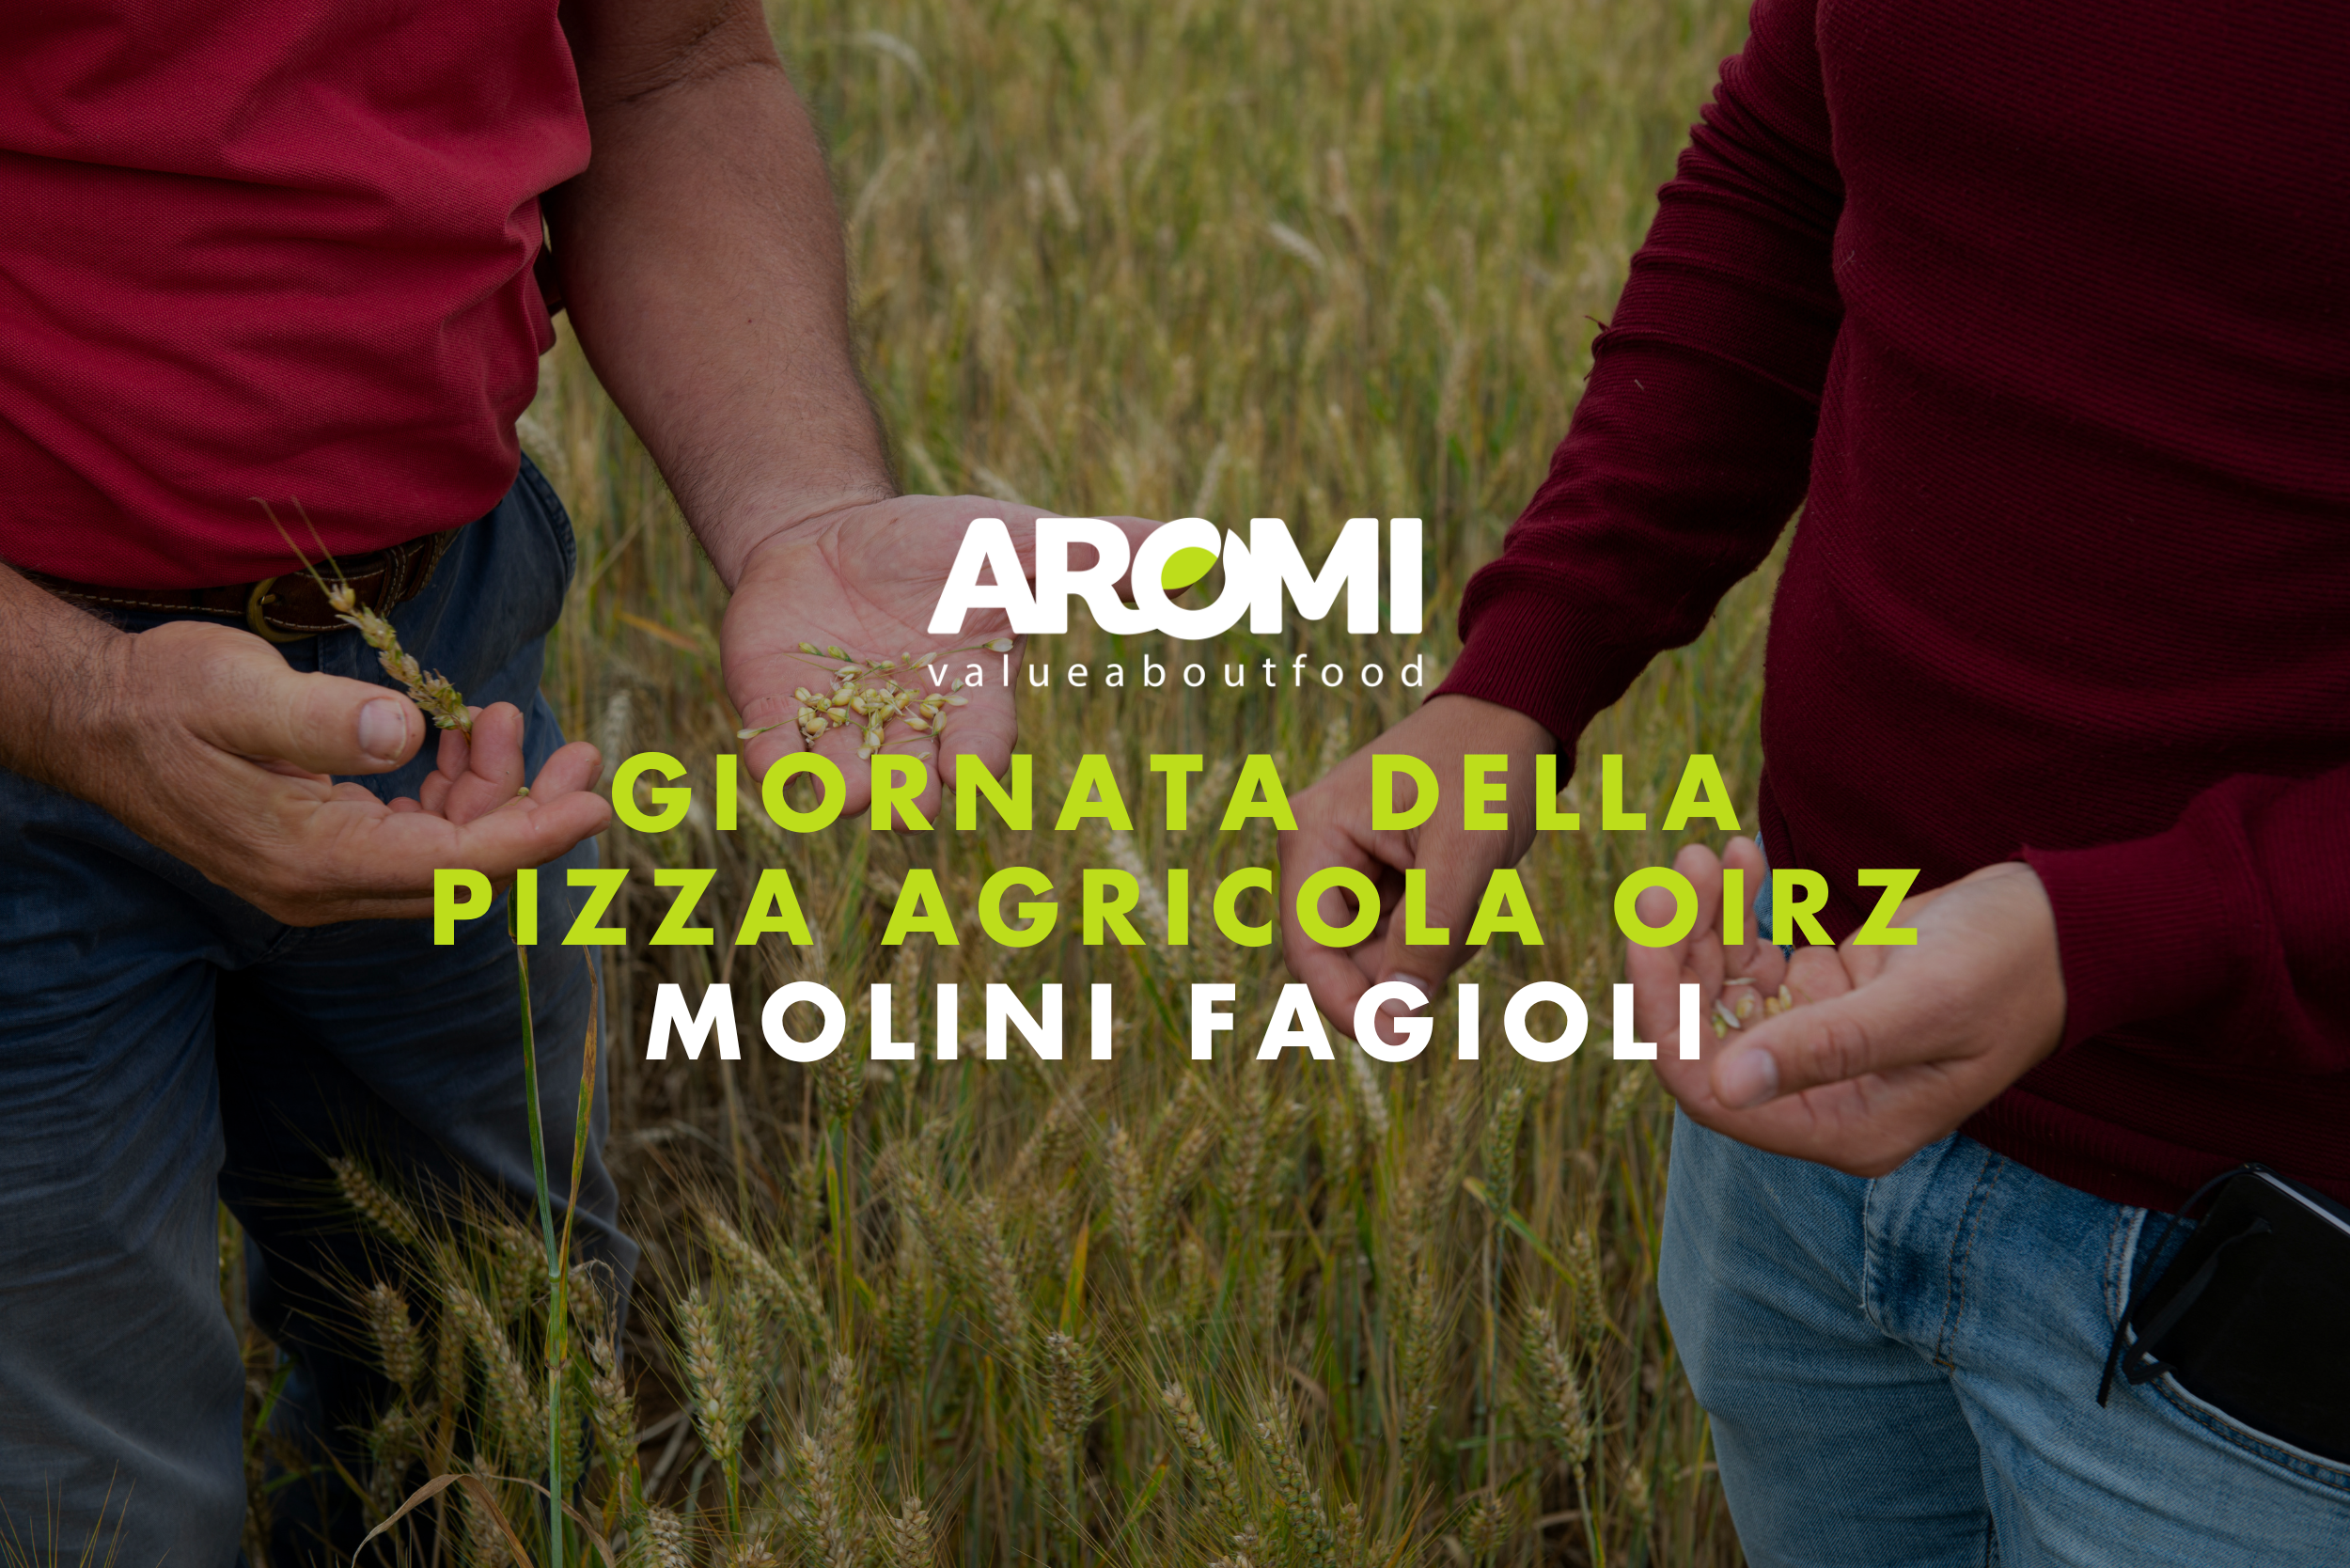 Giornate della Pizza Agricola OIRZ: il nuovo format studiato da Aromi per Molini Fagioli